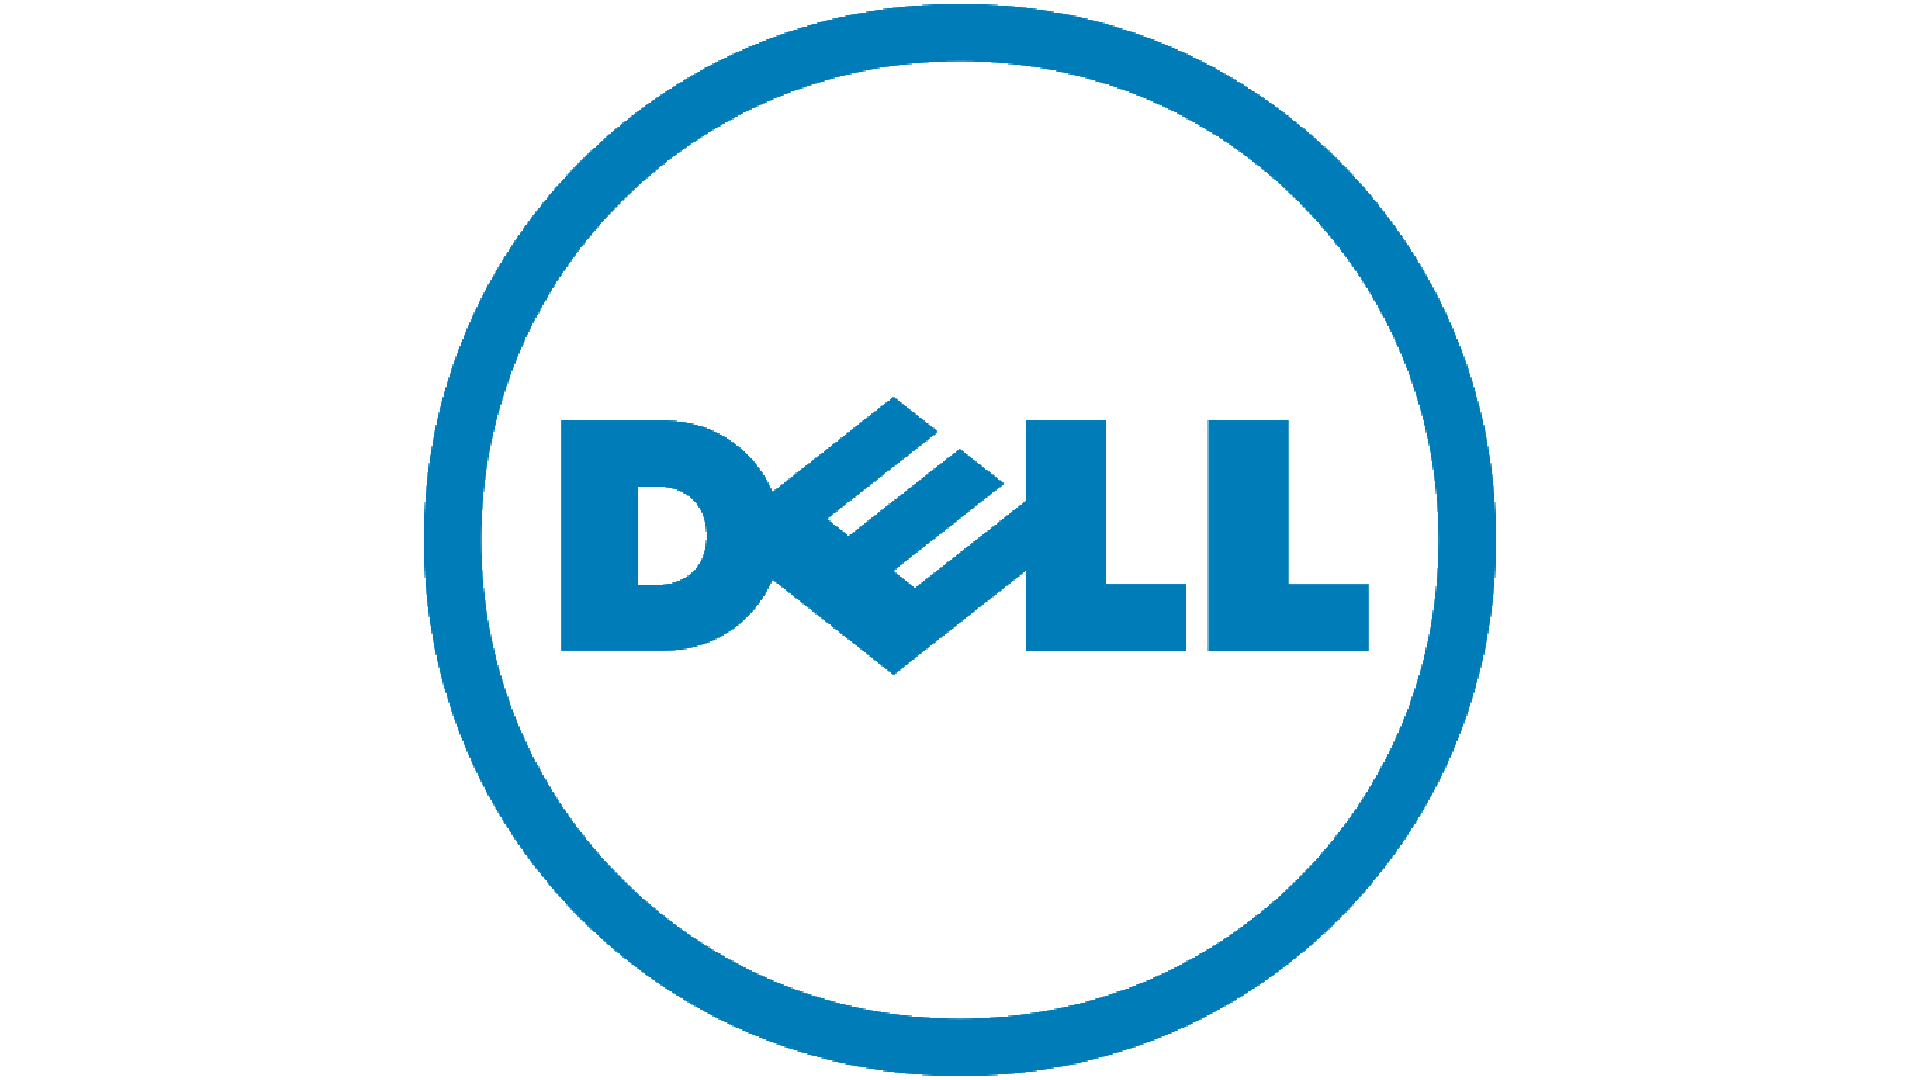 Brand: Dell